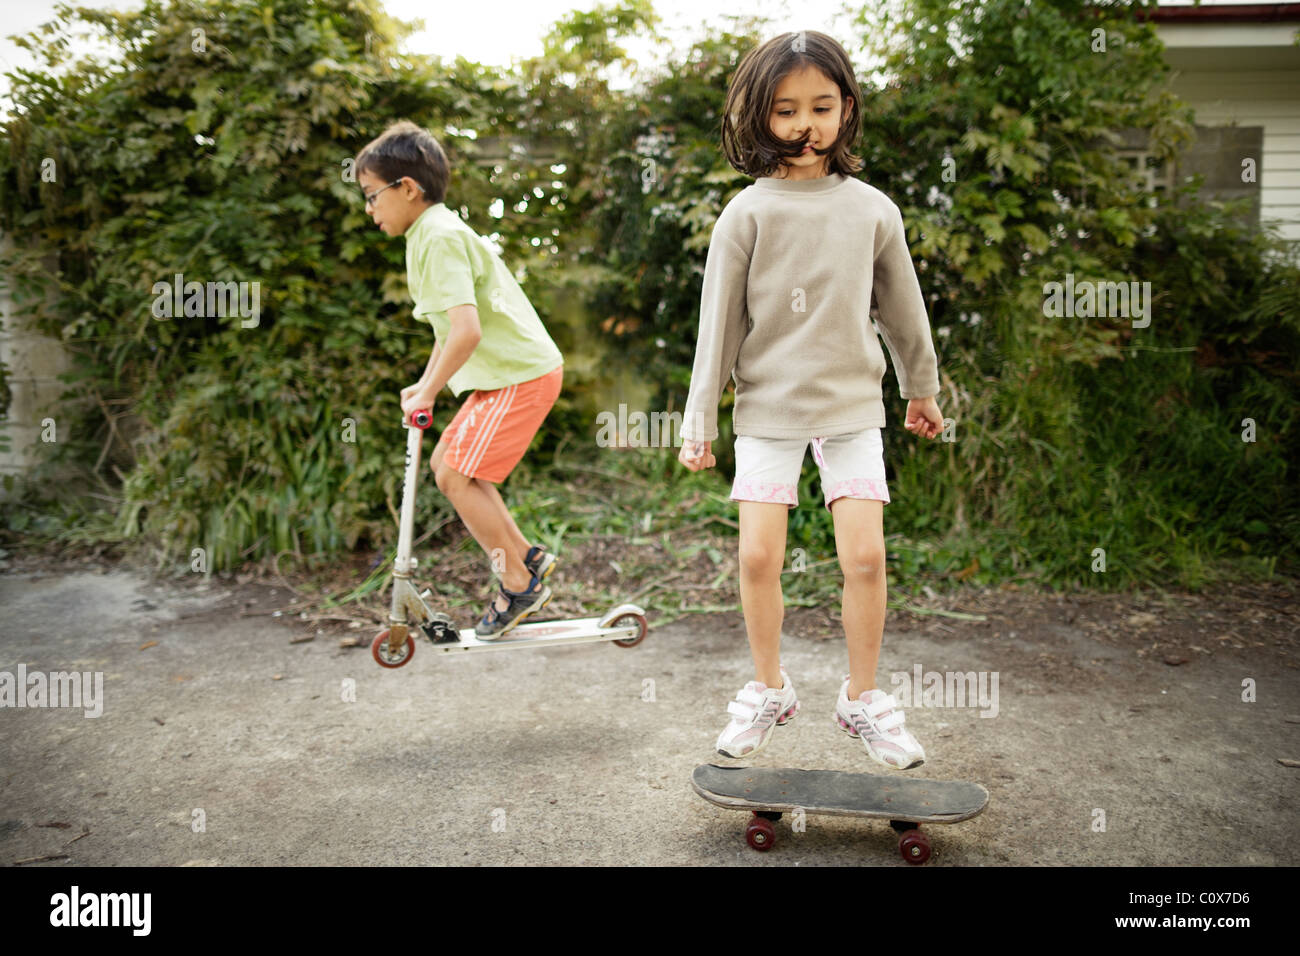 Mädchen springt auf Skateboard als junge Bunny-Hops auf Roller. Stockfoto